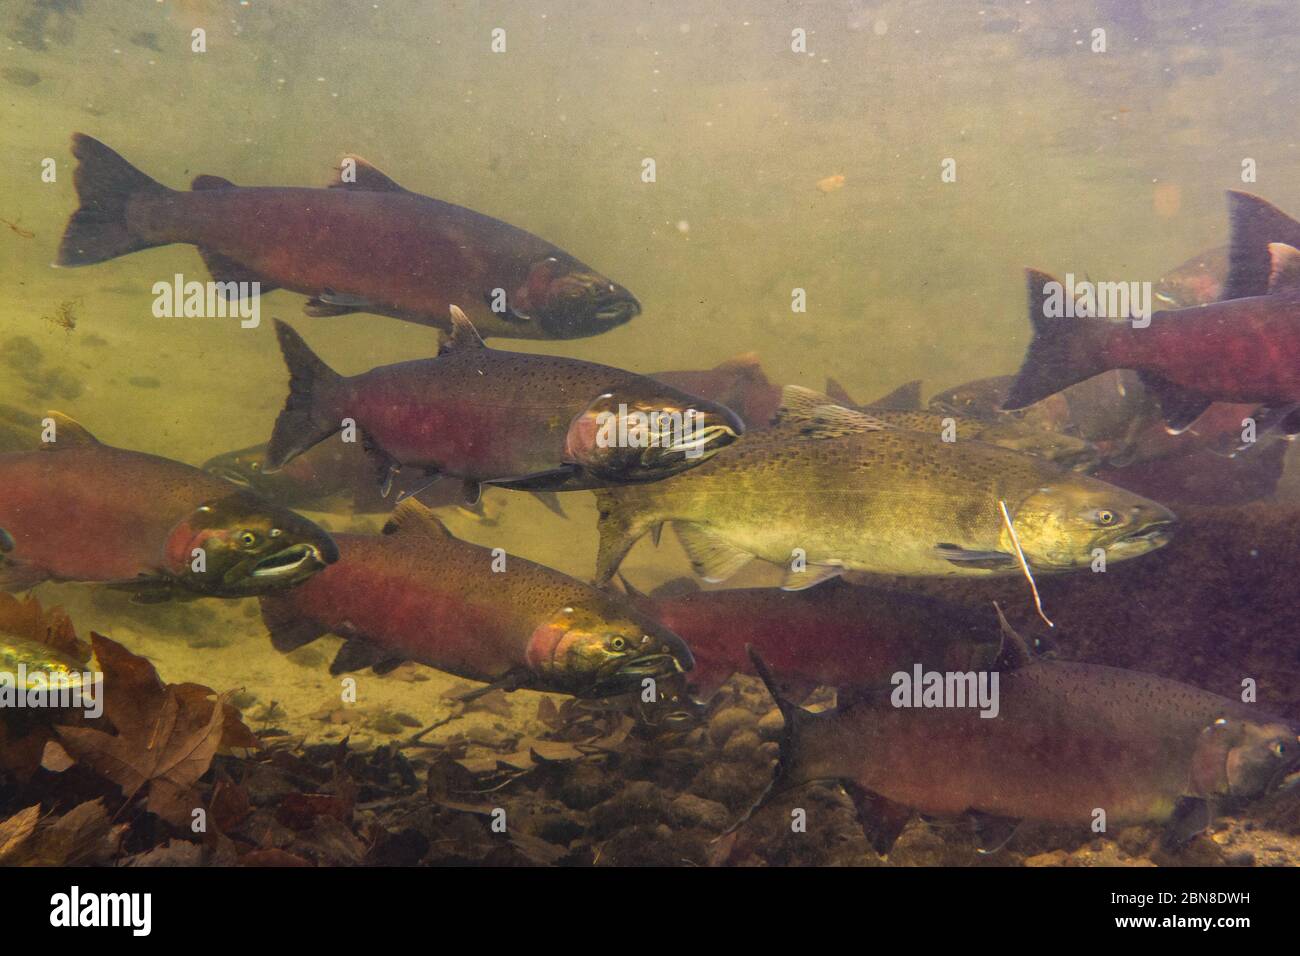 Une école de saumon coho et chinook nageant dans la rivière Skagit, Washington, Etats-Unis. Banque D'Images